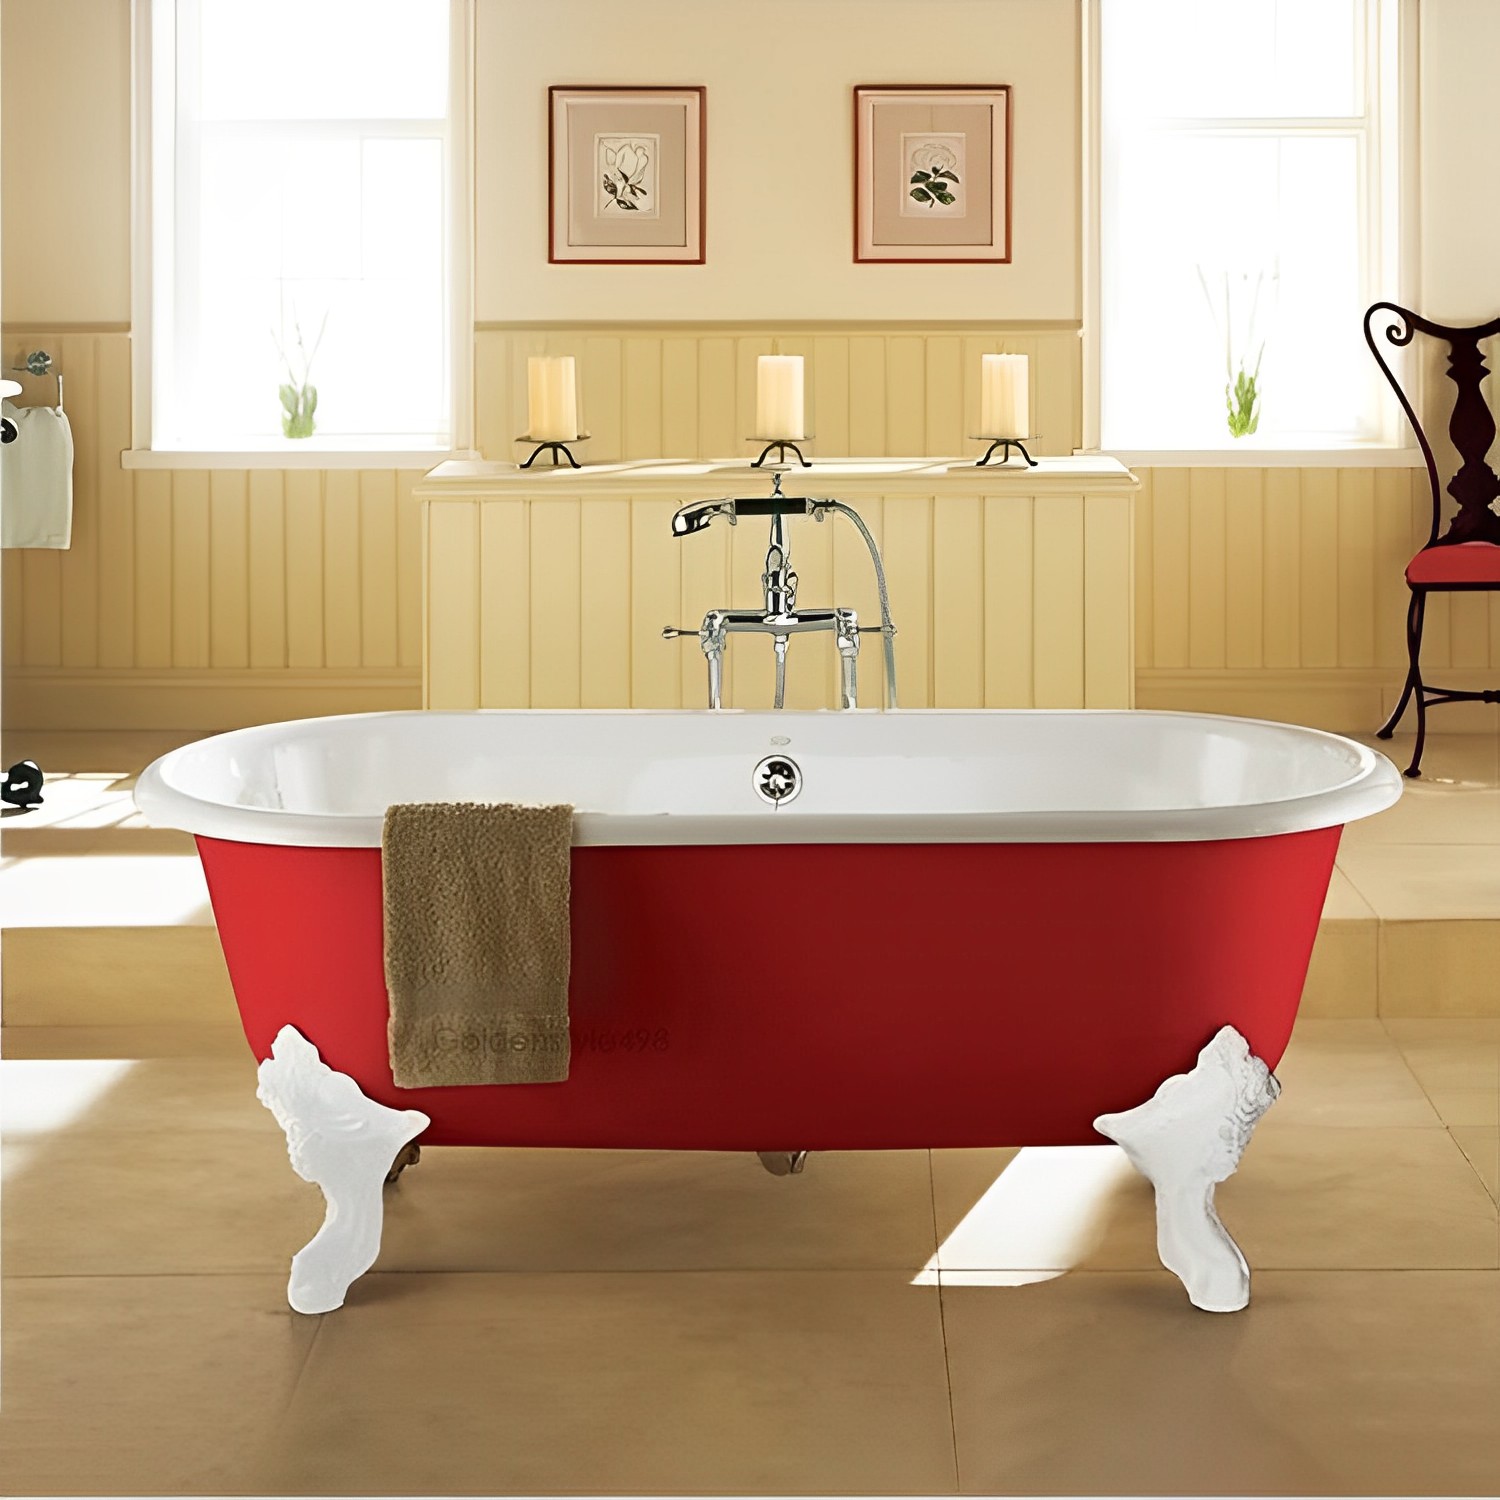 KOHLER K-11195T-RF <br> CLEO 獨立式鑄鐵浴缸(175cm,紅)  |浴缸|KOHLER|獨立式浴缸